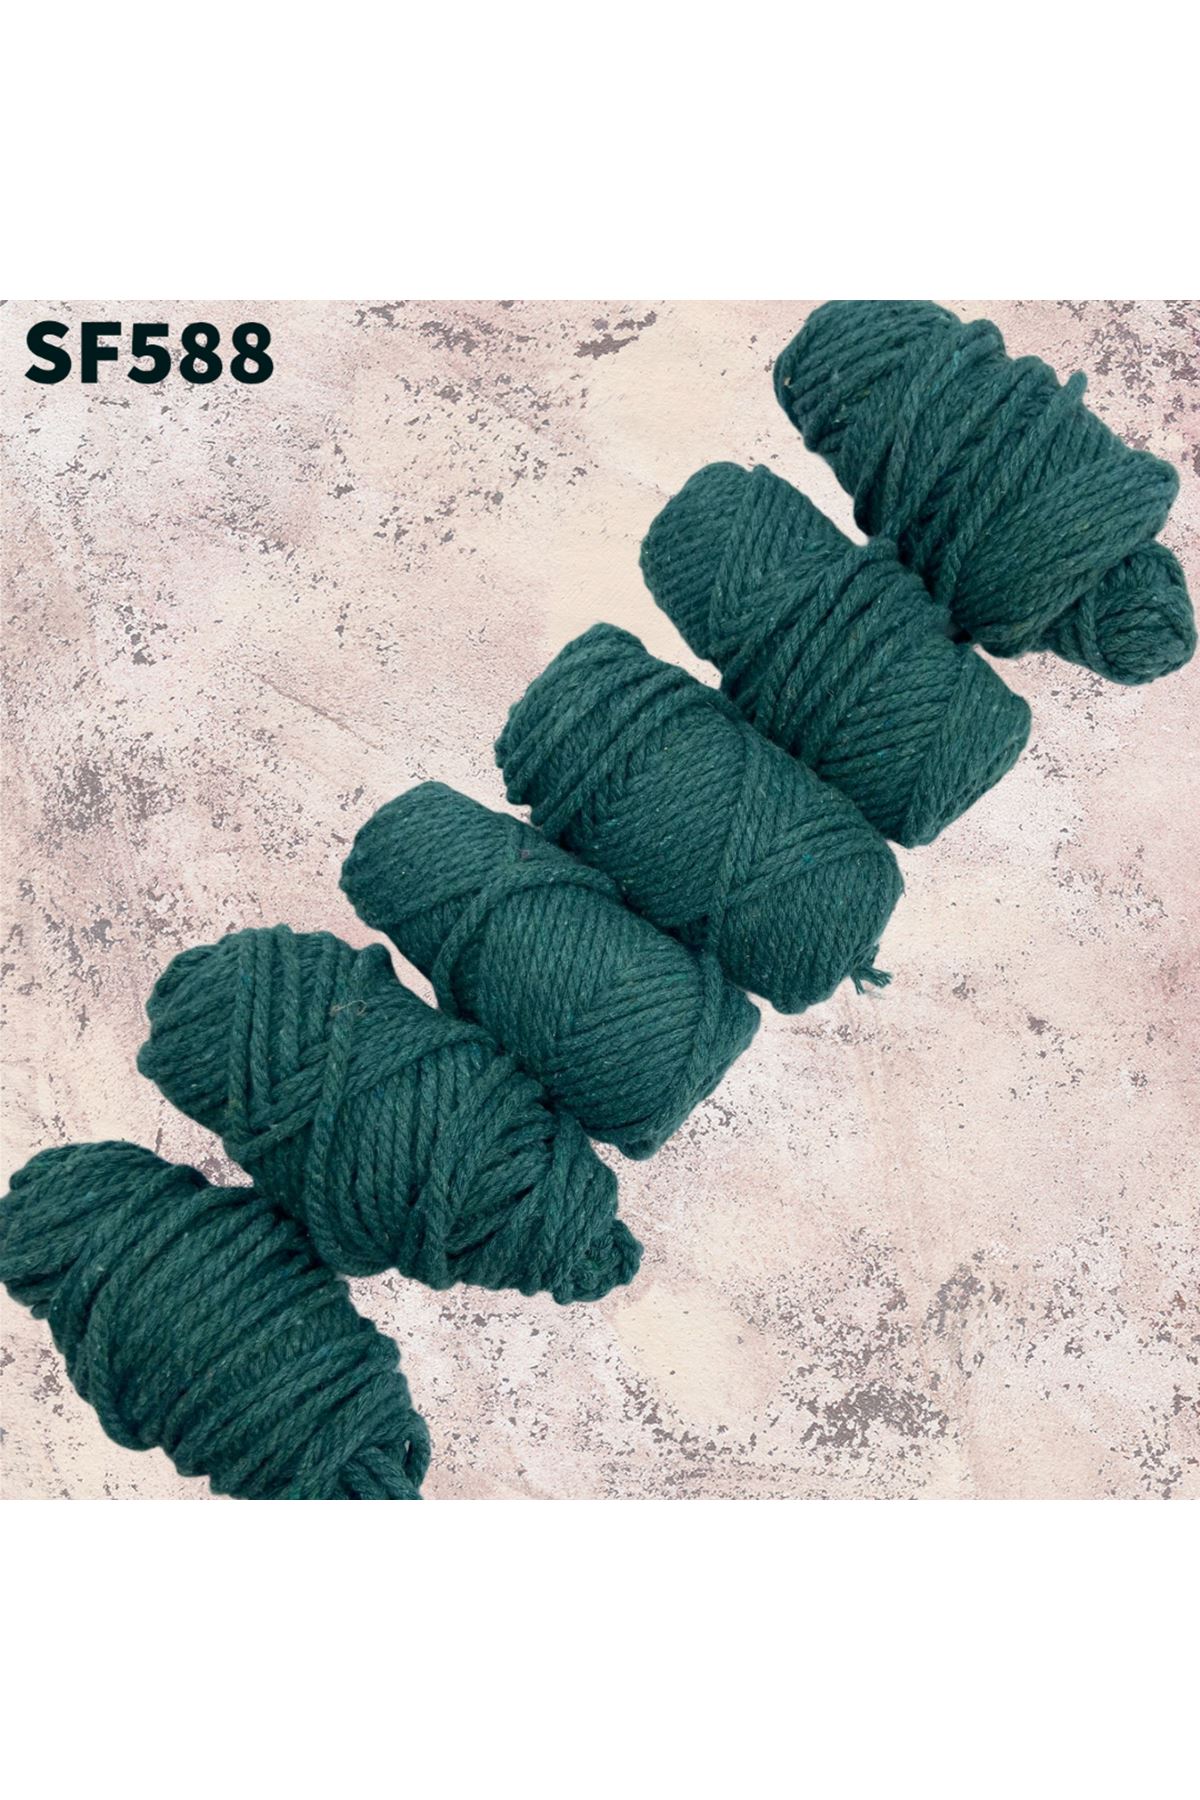 Stok Fazlası Bükümlü Cotton Makrome Zümrüt 500 Gram SF588